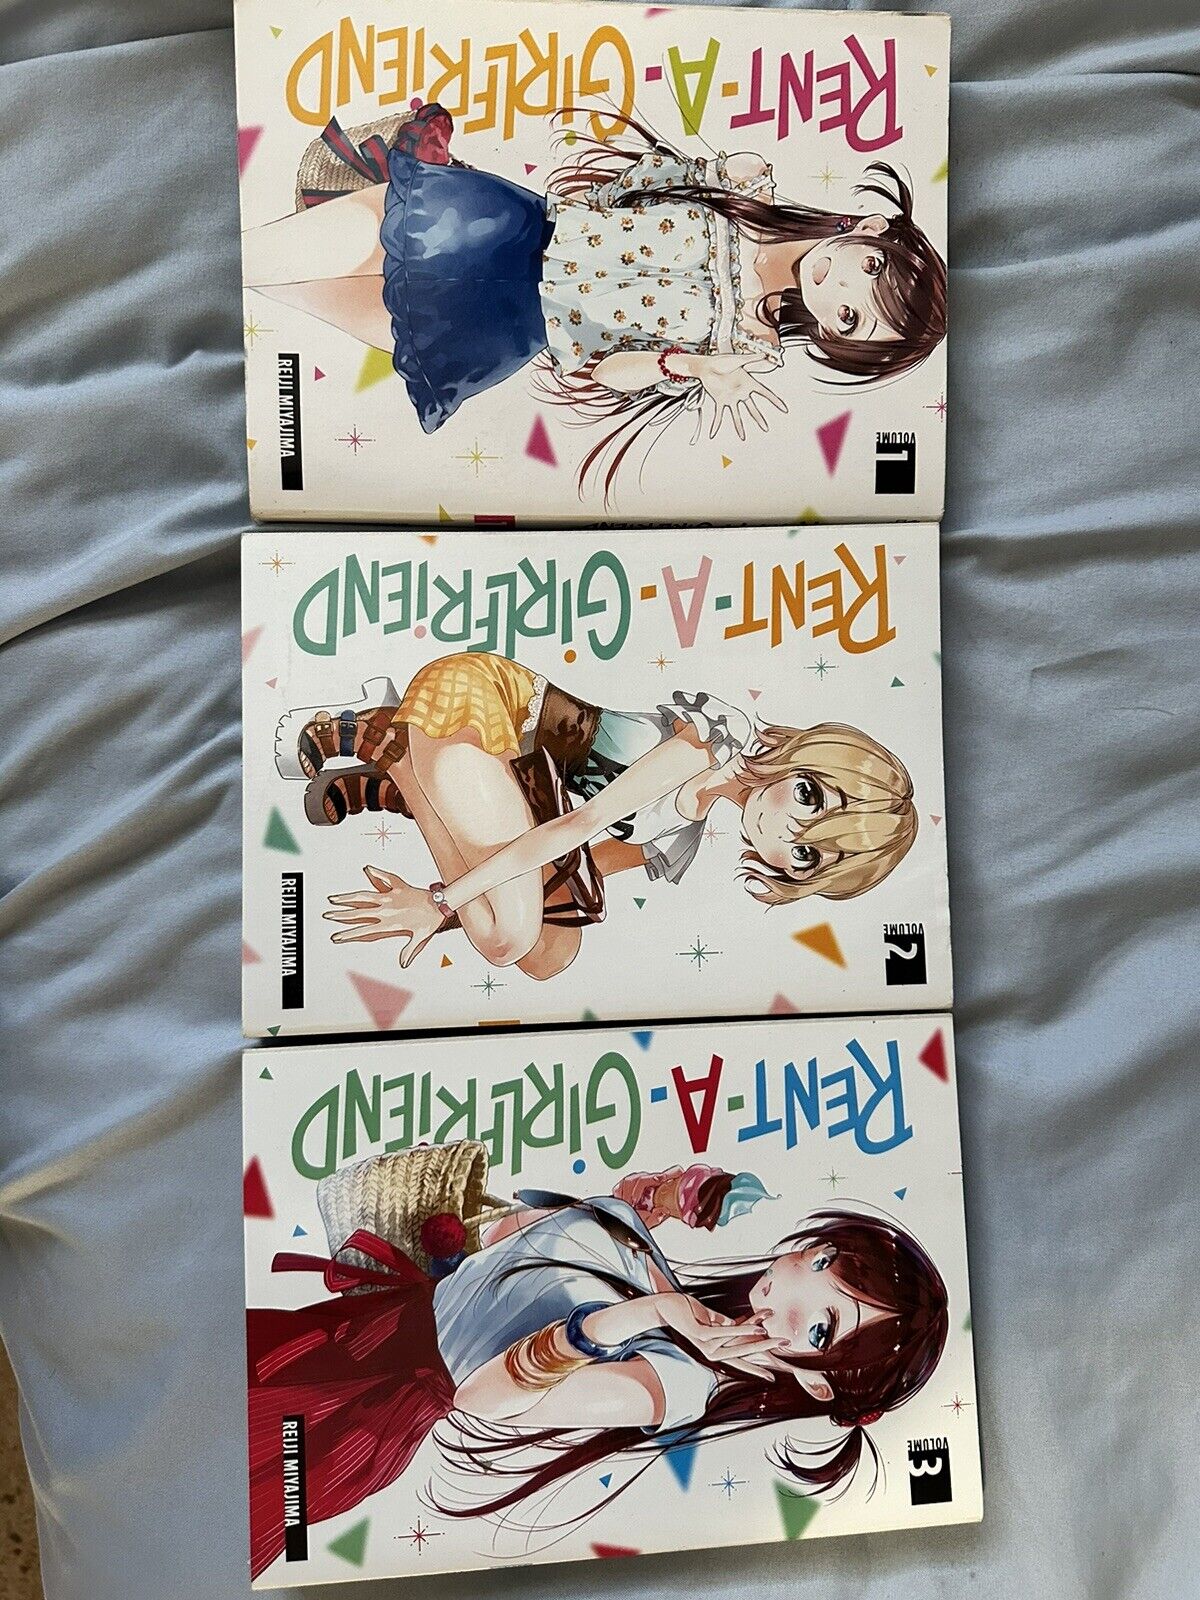 rent a girlfriend manga volumes 1-3 english